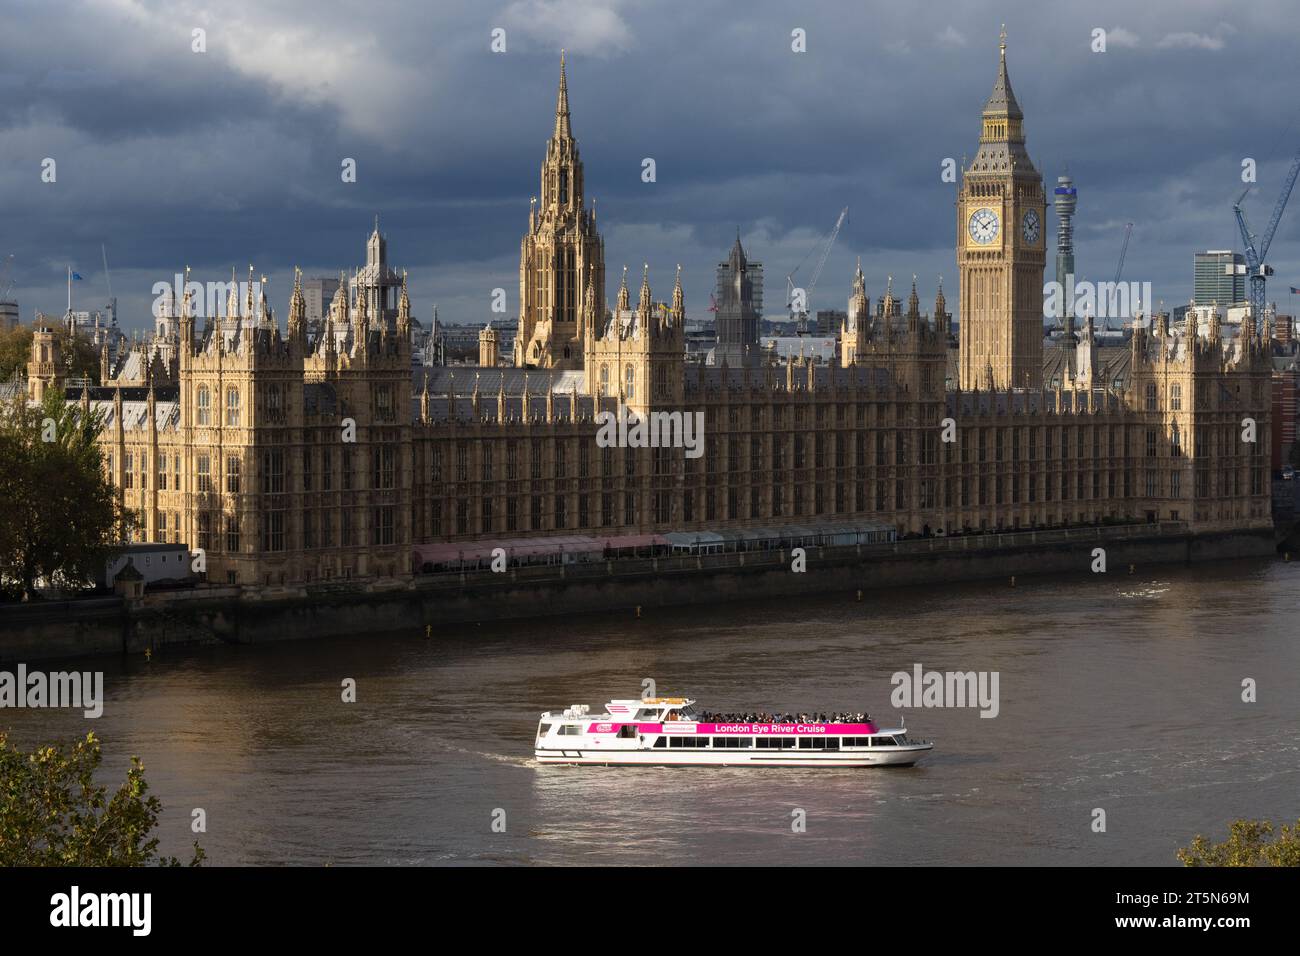 Der Palace of Westminster ist der Versammlungsort des Parlaments des Vereinigten Königreichs und befindet sich in London, England Stockfoto